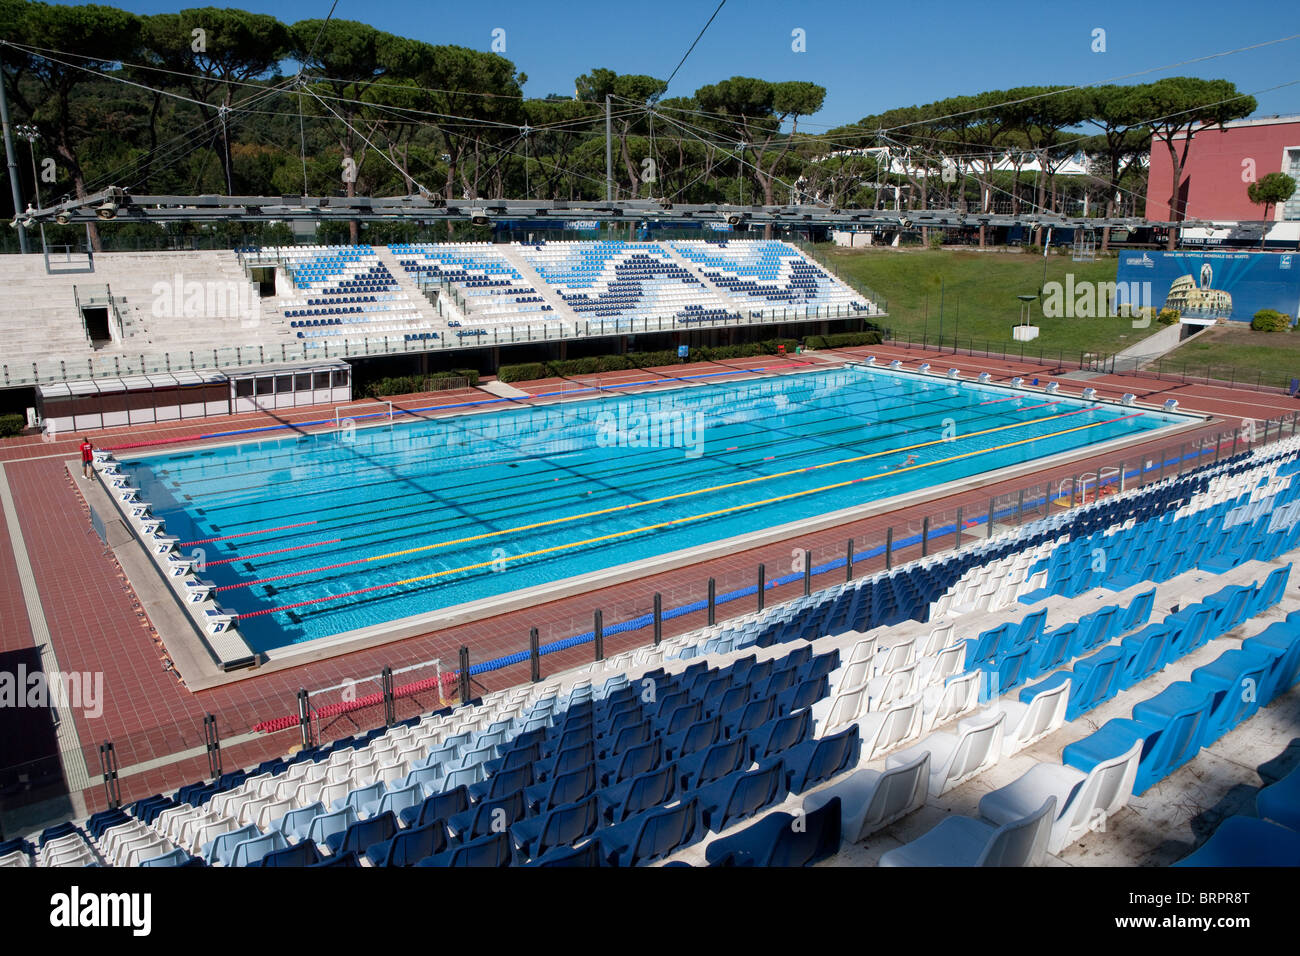 Olympic pool immagini e fotografie stock ad alta risoluzione - Alamy